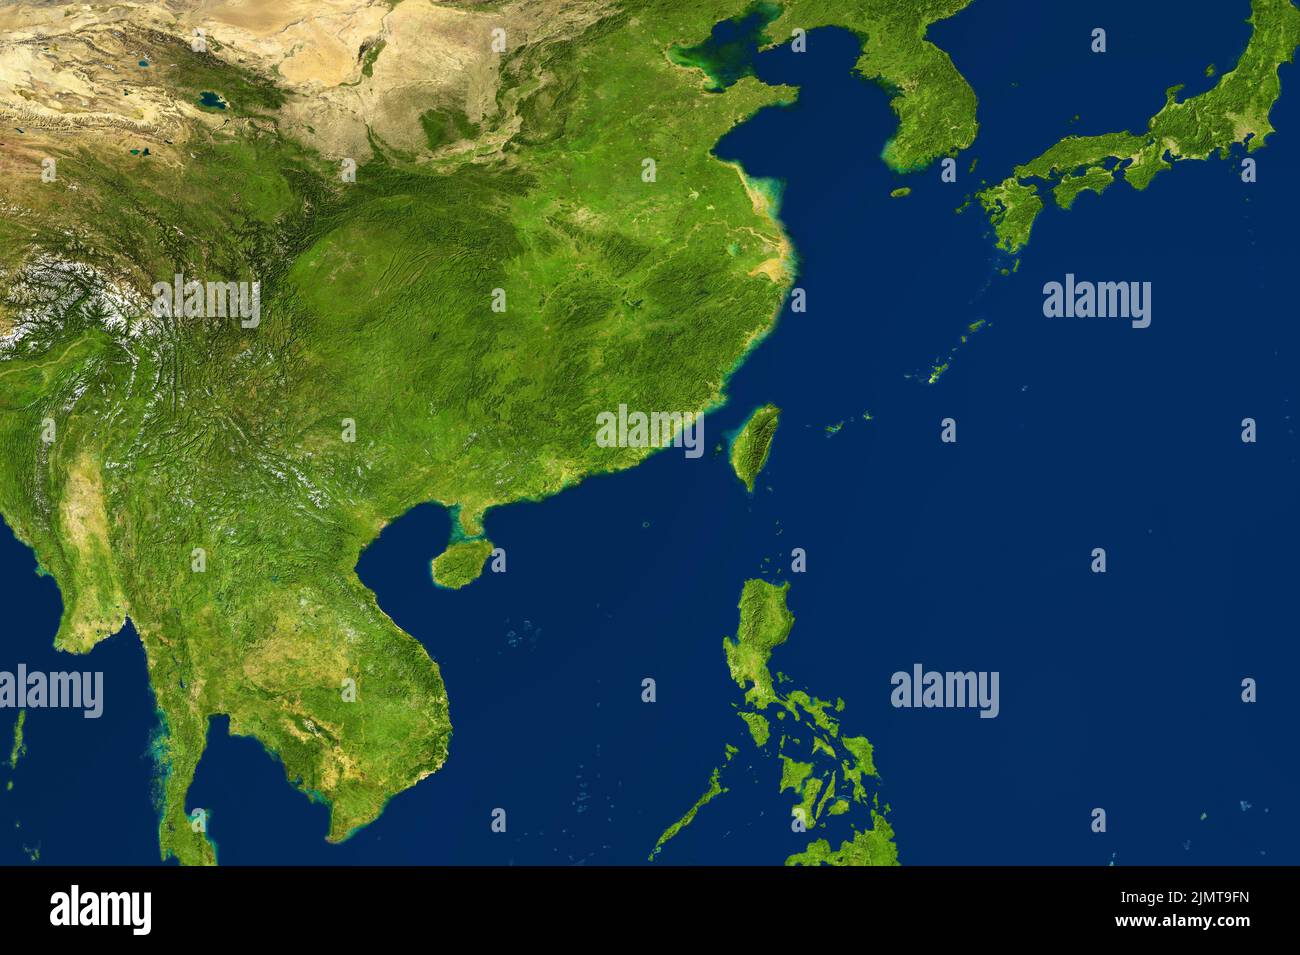 Mappa dell'Asia orientale in foto satellitare, Cina e Taiwan al centro. Mappa fisica dettagliata di Eurasia sud-est, topografia della Cina. Terreno verde, mare blu Foto Stock